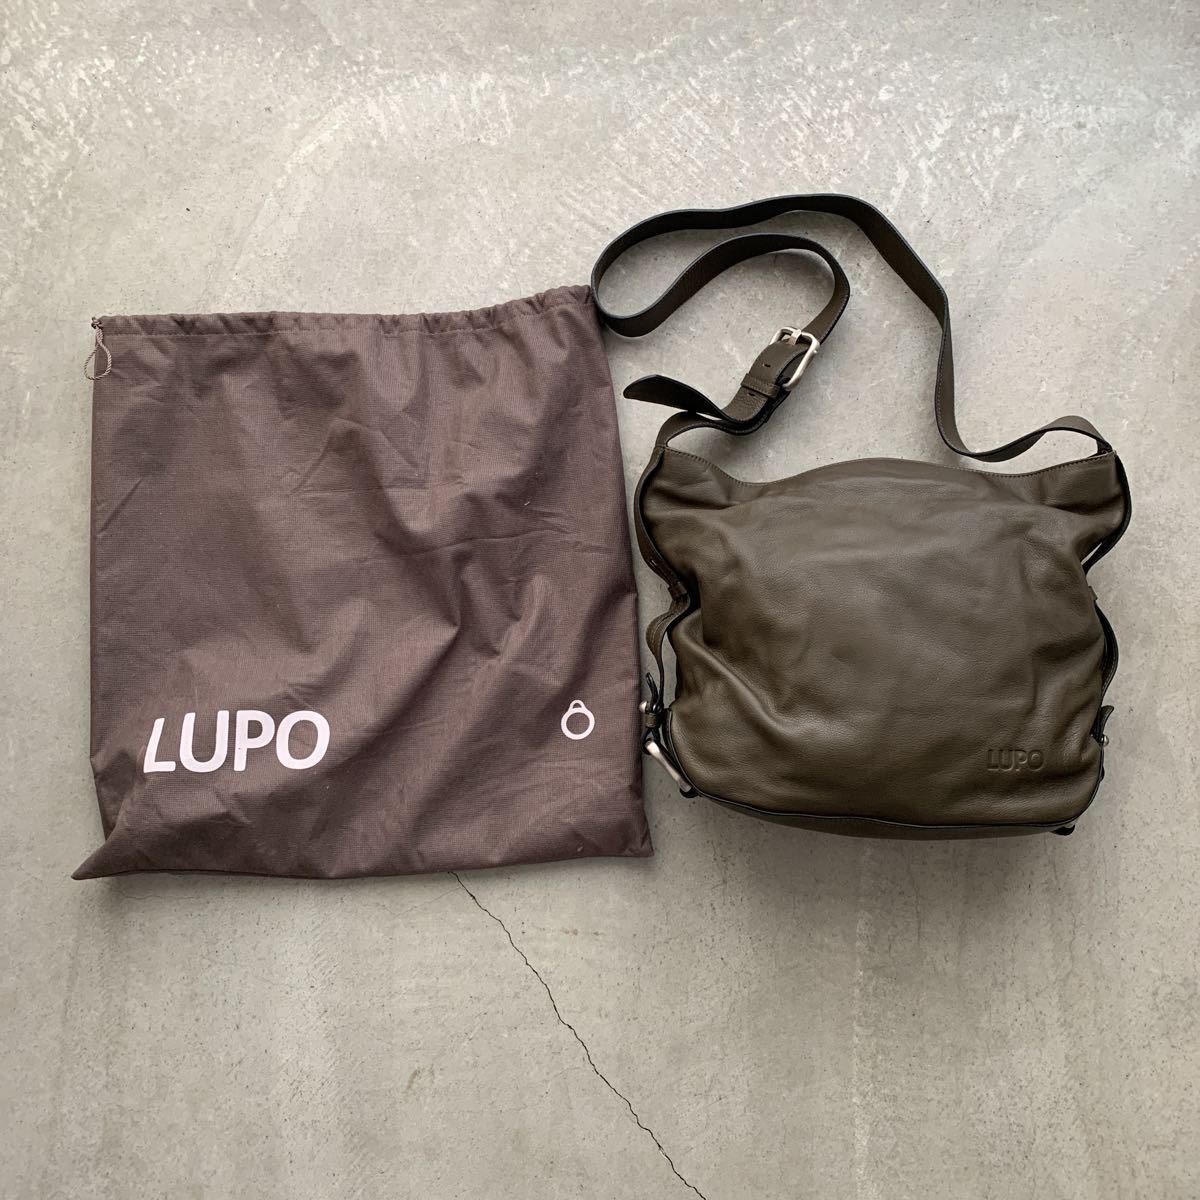 数回使用☆保管袋取り扱い説明書付き☆ルポ LUPO☆ショルダーバッグ - レザー グリーン系バッグ